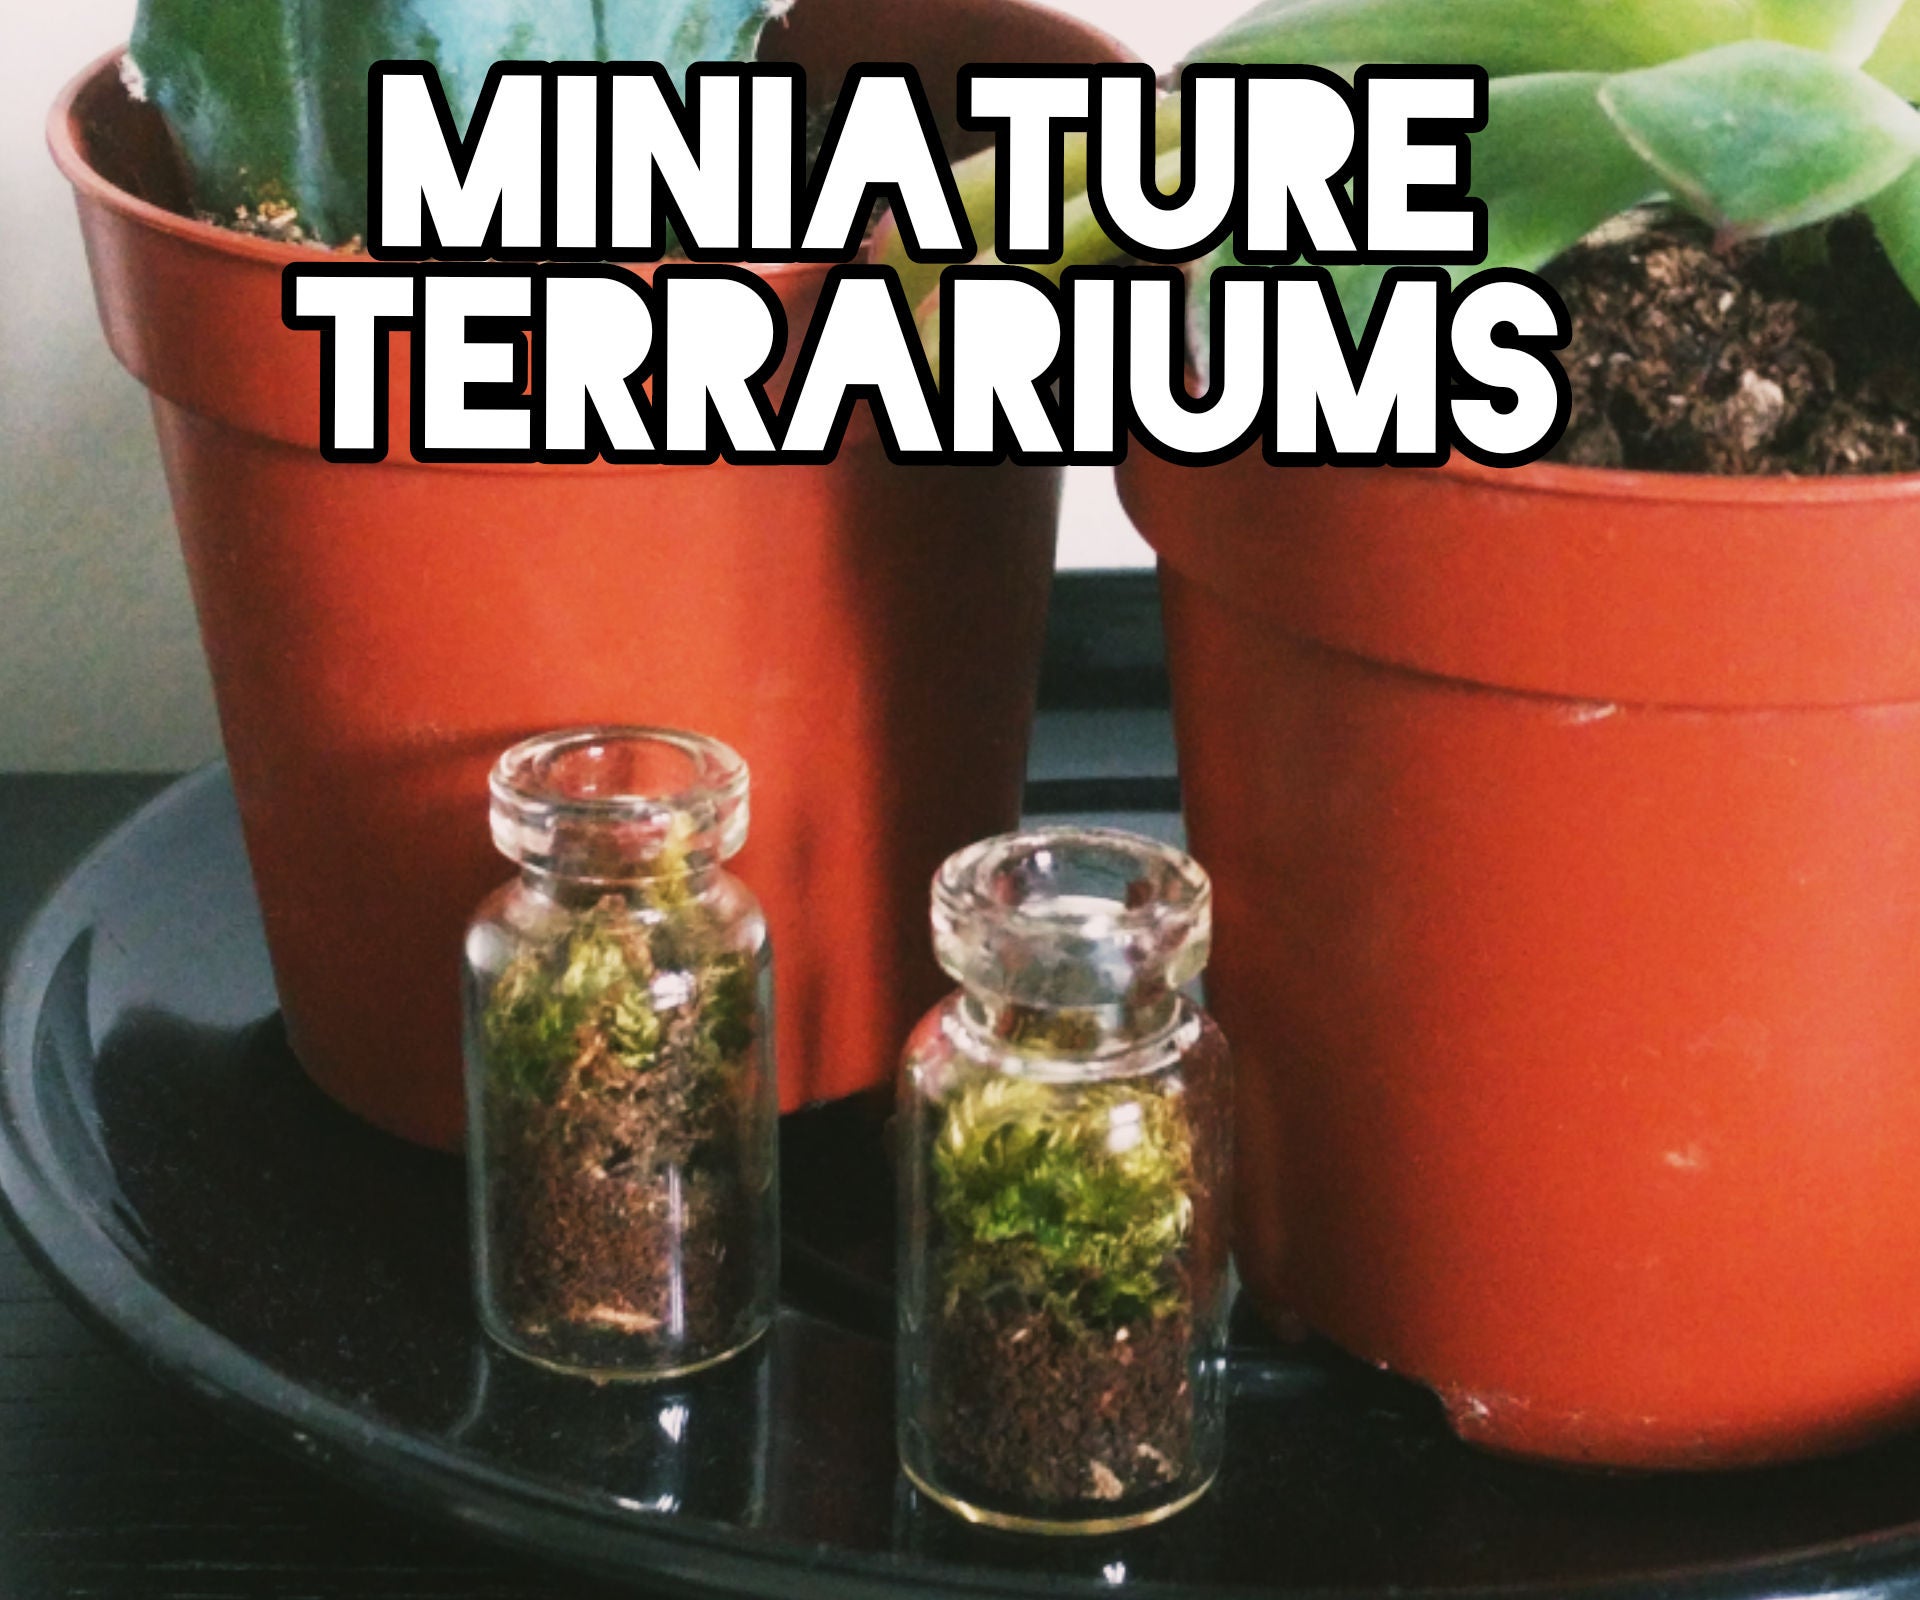 Minature Terrariums